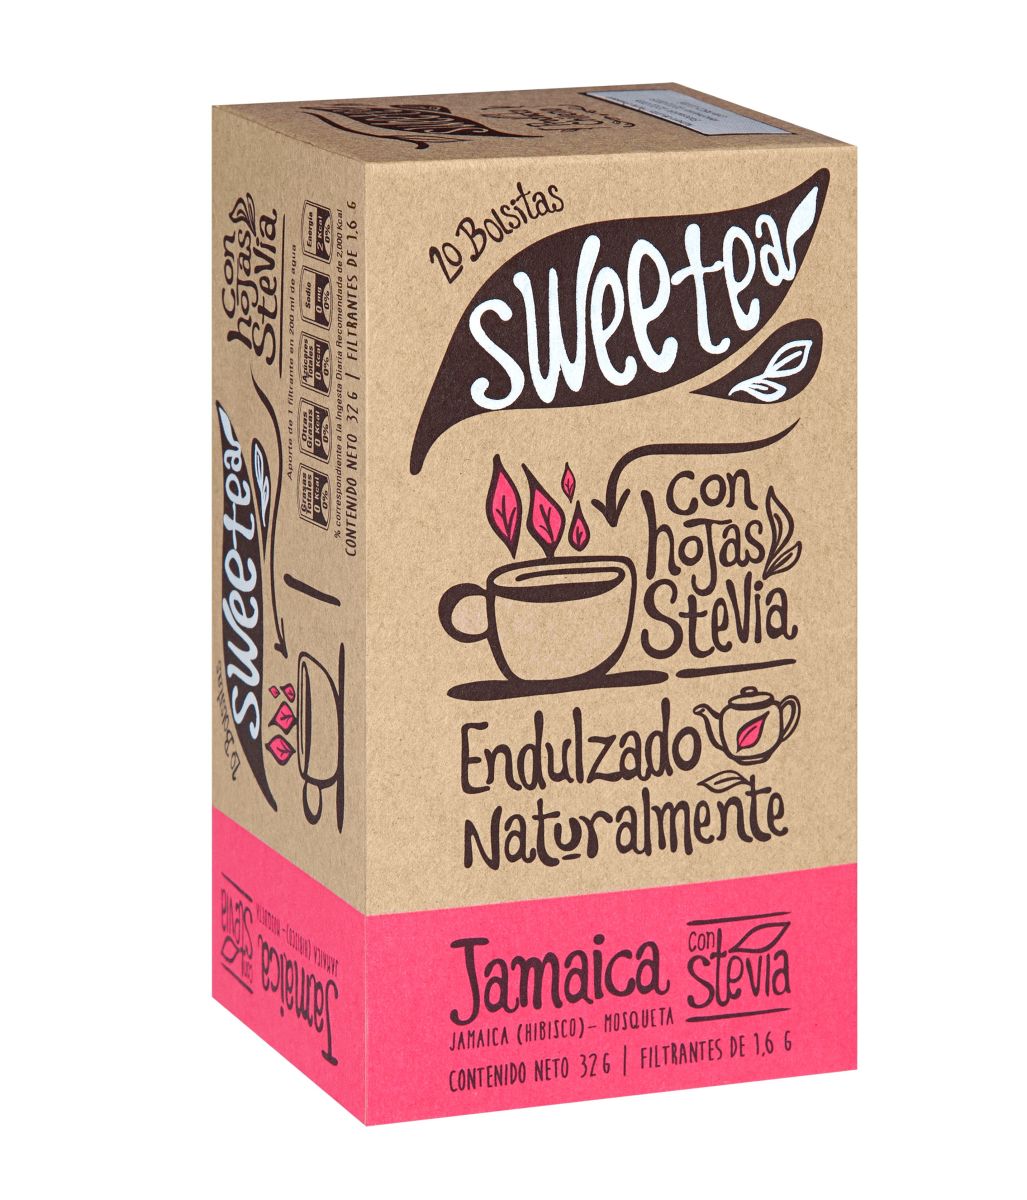 Té Jamaica endulzado con Stevia Sweetea